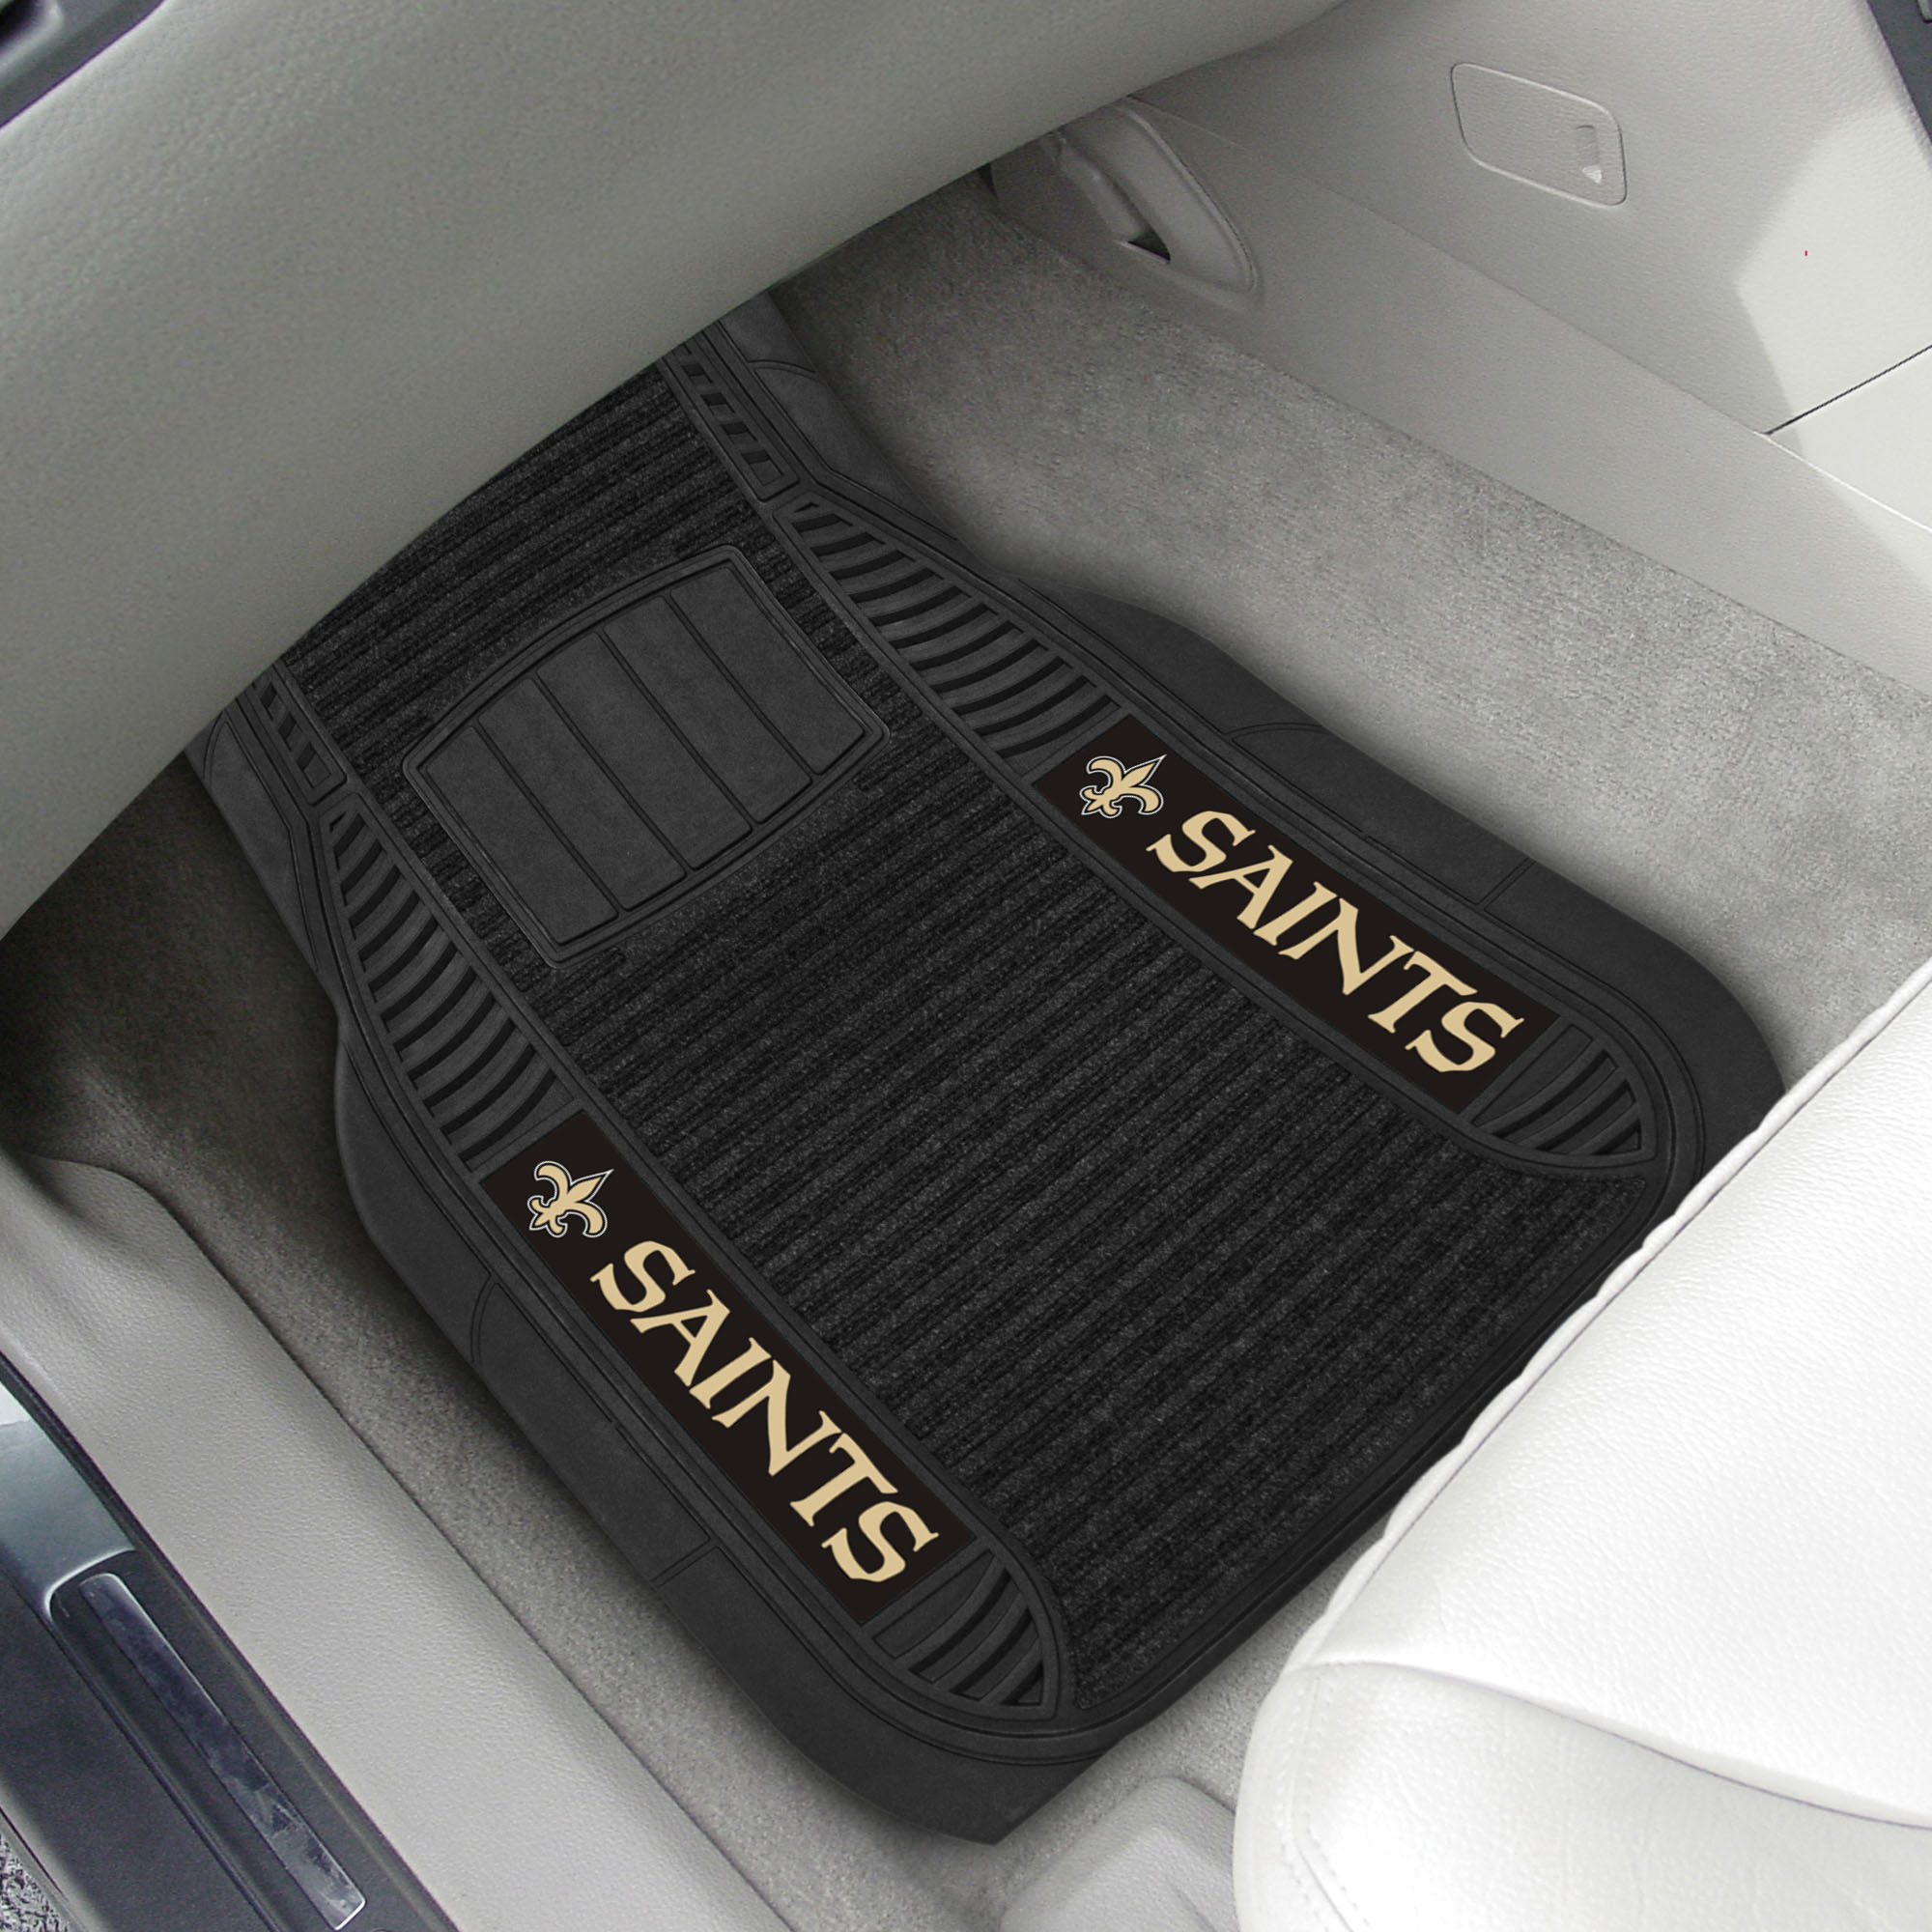 New Orleans Saints Deluxe Car Mat Set – Vinyl & Carpet